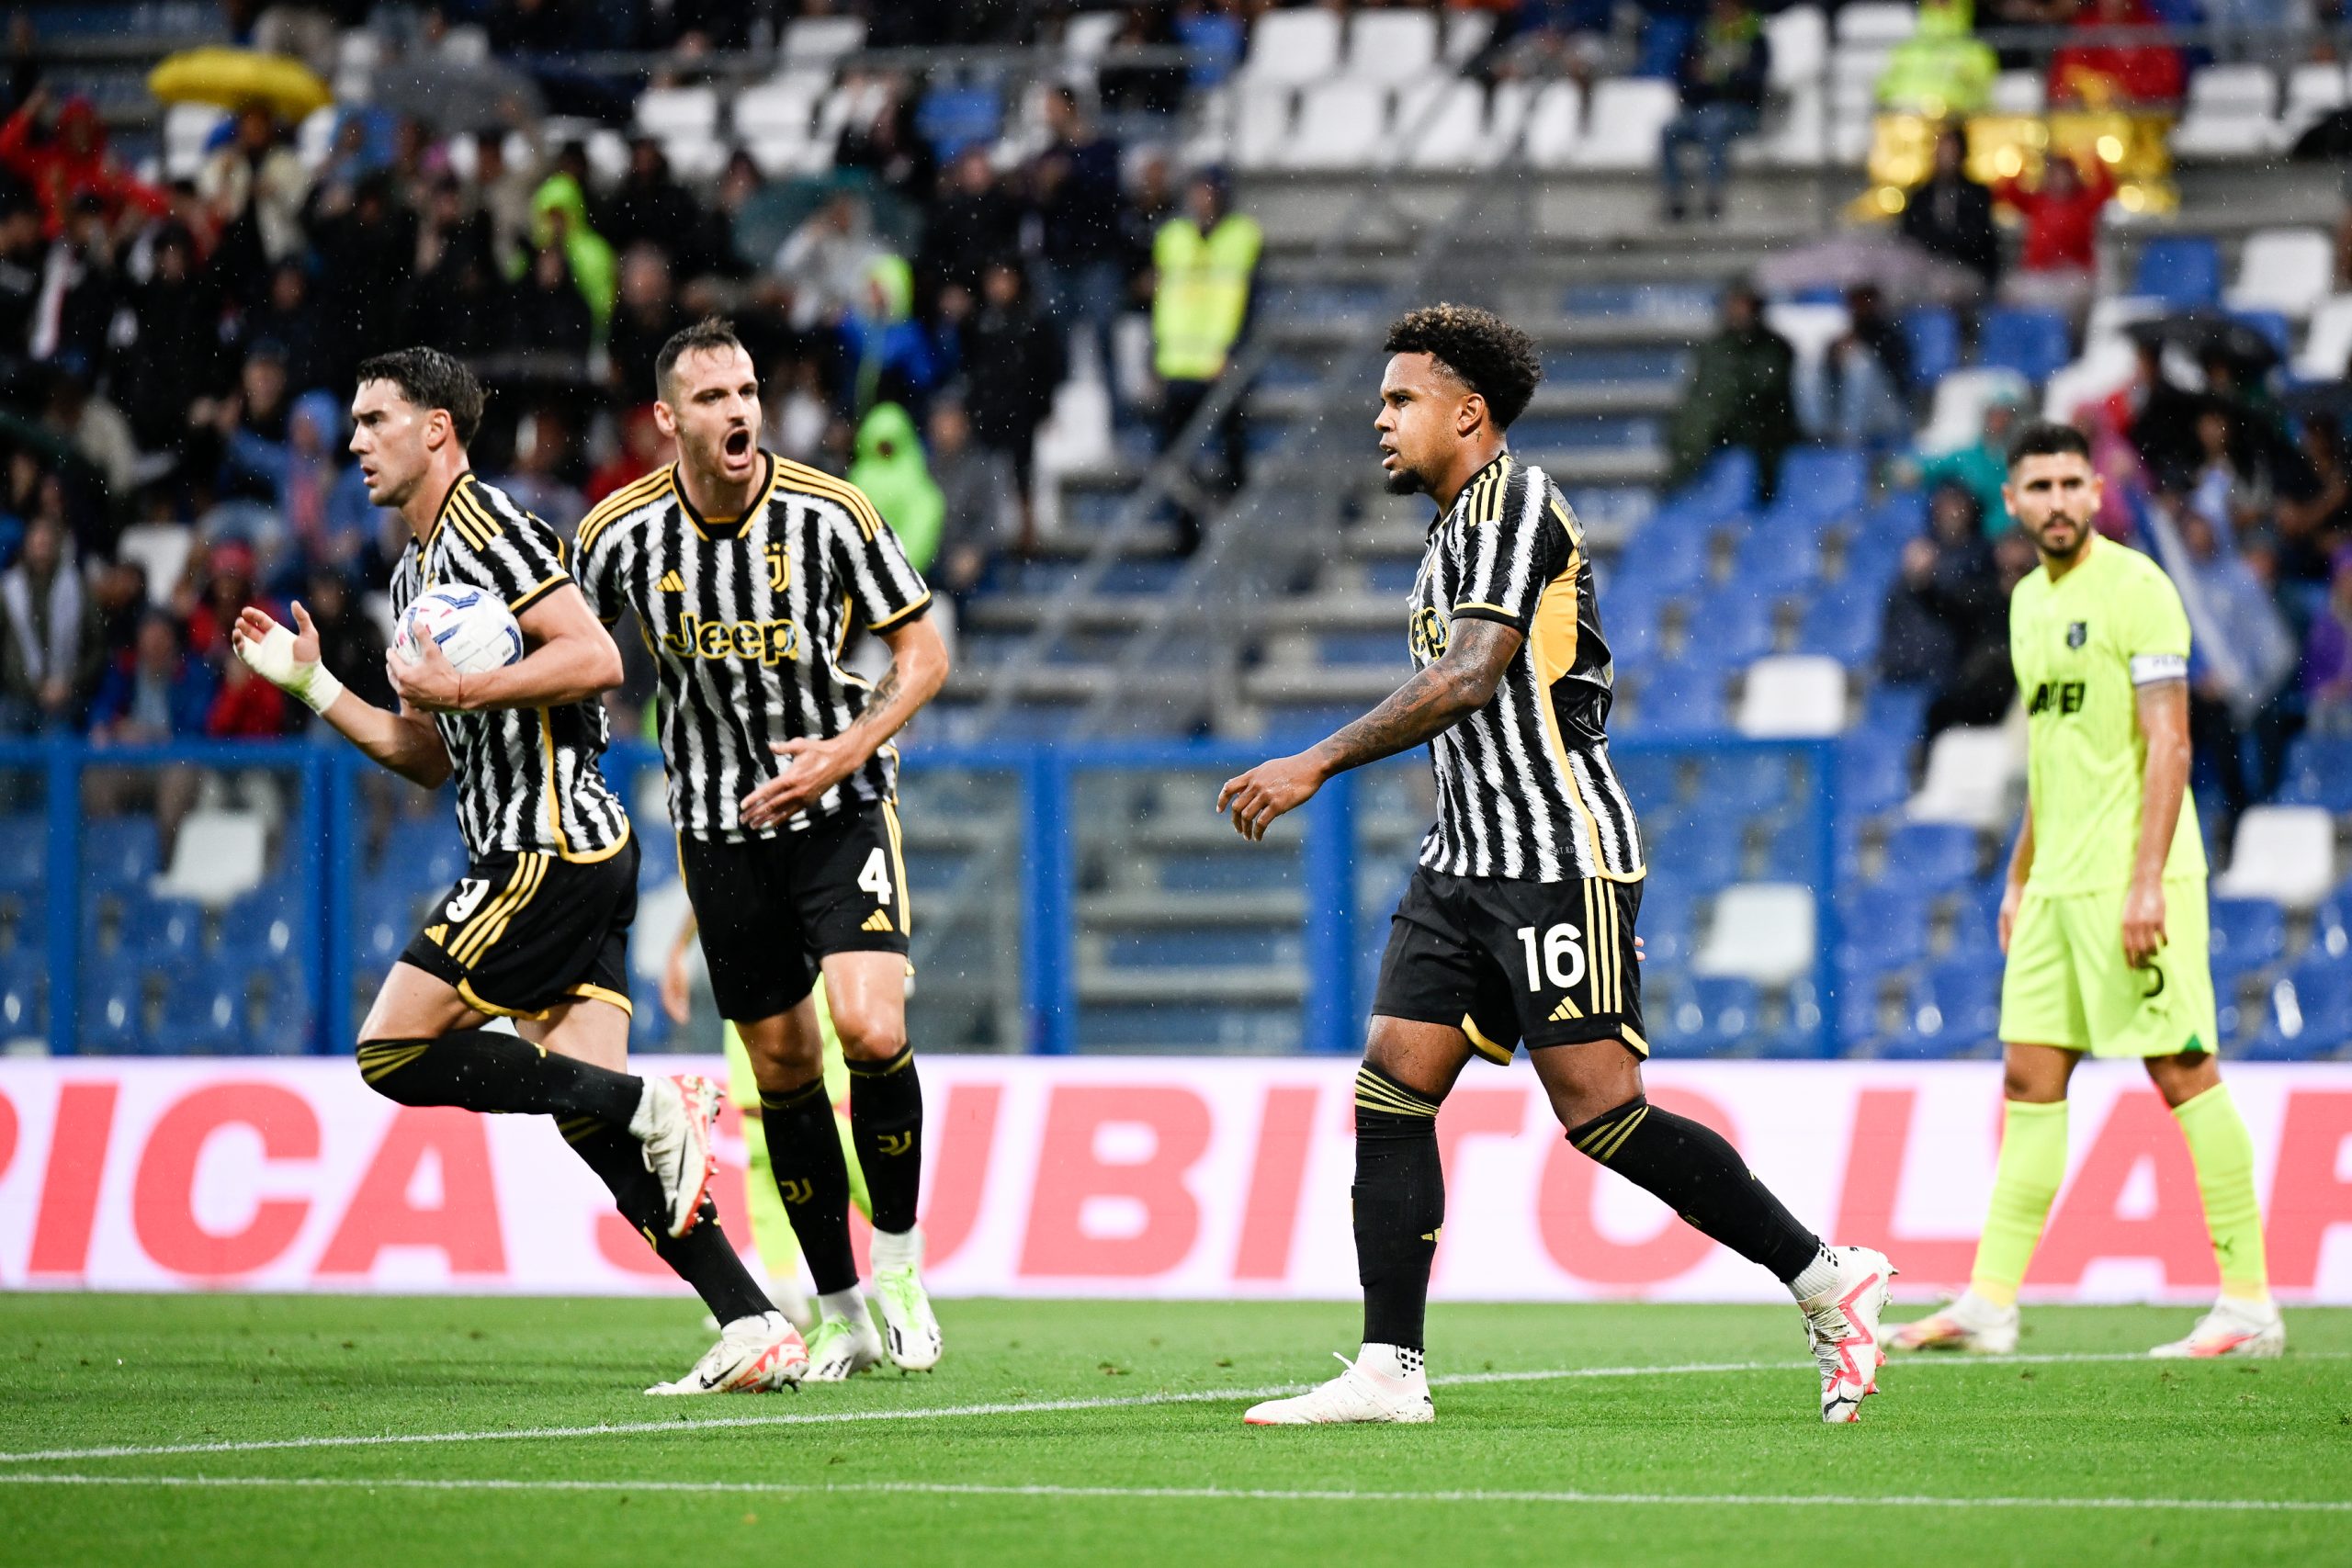 Probabilitats Juventus-Sassuolo: les probabilitats augmenten en els resultats Més de 0,5 i 1,5